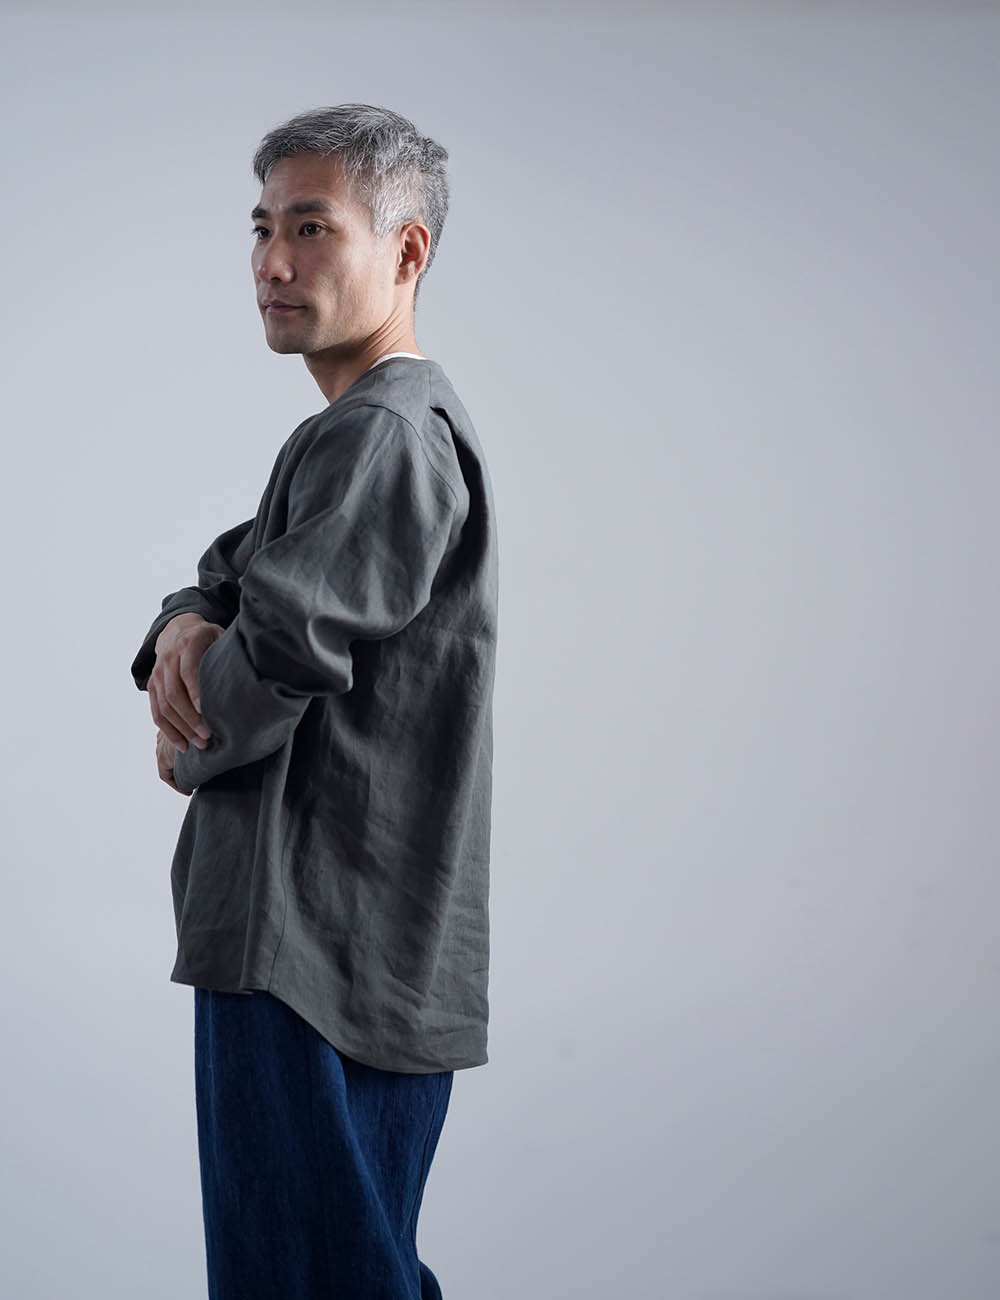 Linen Shirt　超高密度リネン スリーピングシャツ 男女兼用 / フォレッジグリーン t030d-fgg1